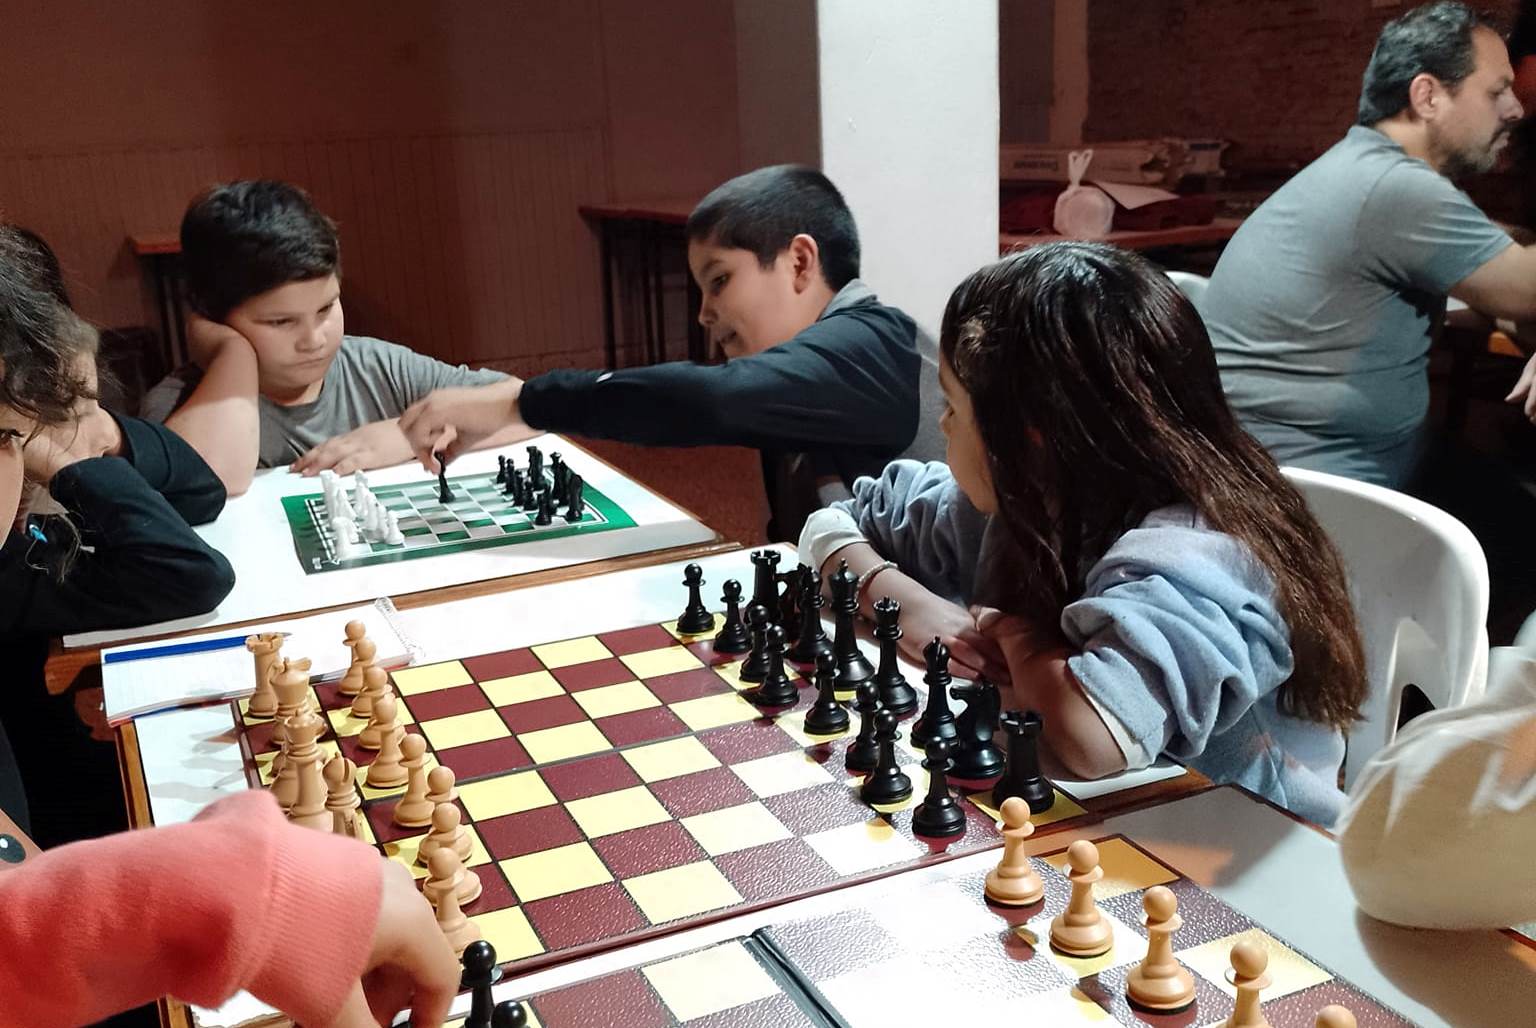 Clases de ajedrez online gratis - Caissa, escuela de ajedrez